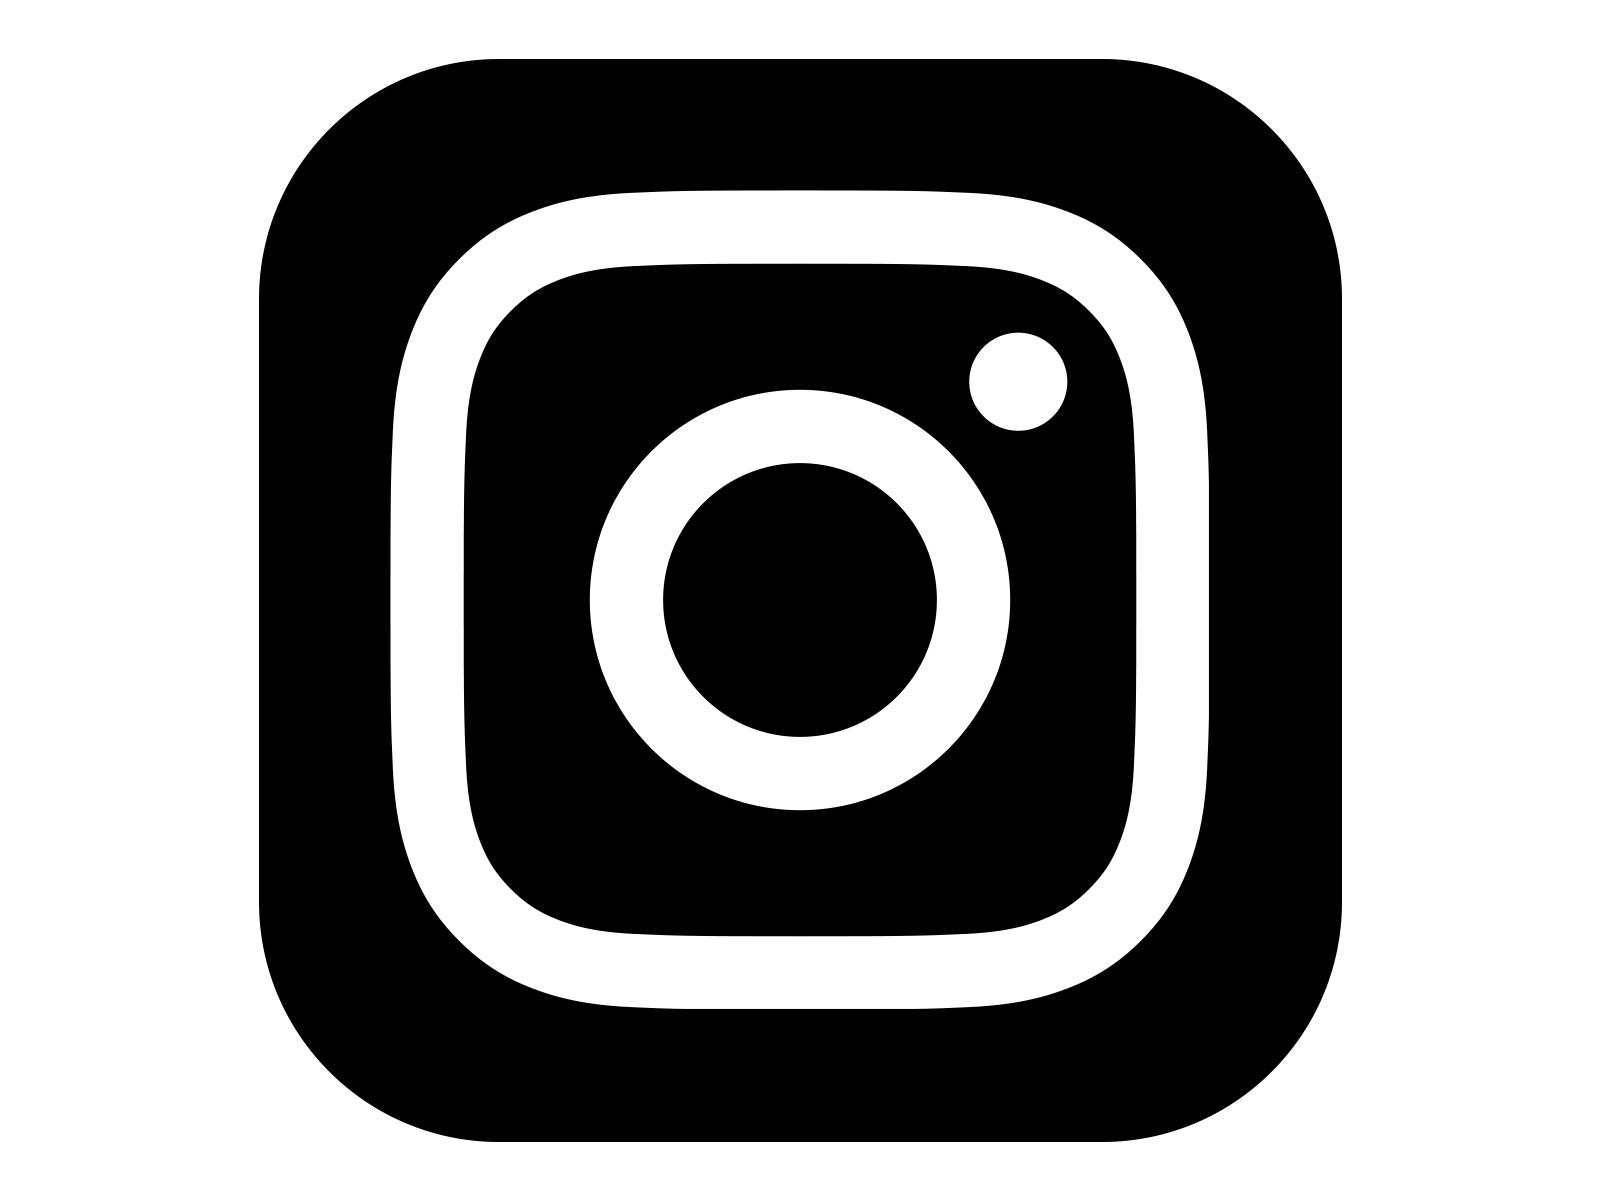 Google White Logo - Instagram App Black And White Logo Png Images